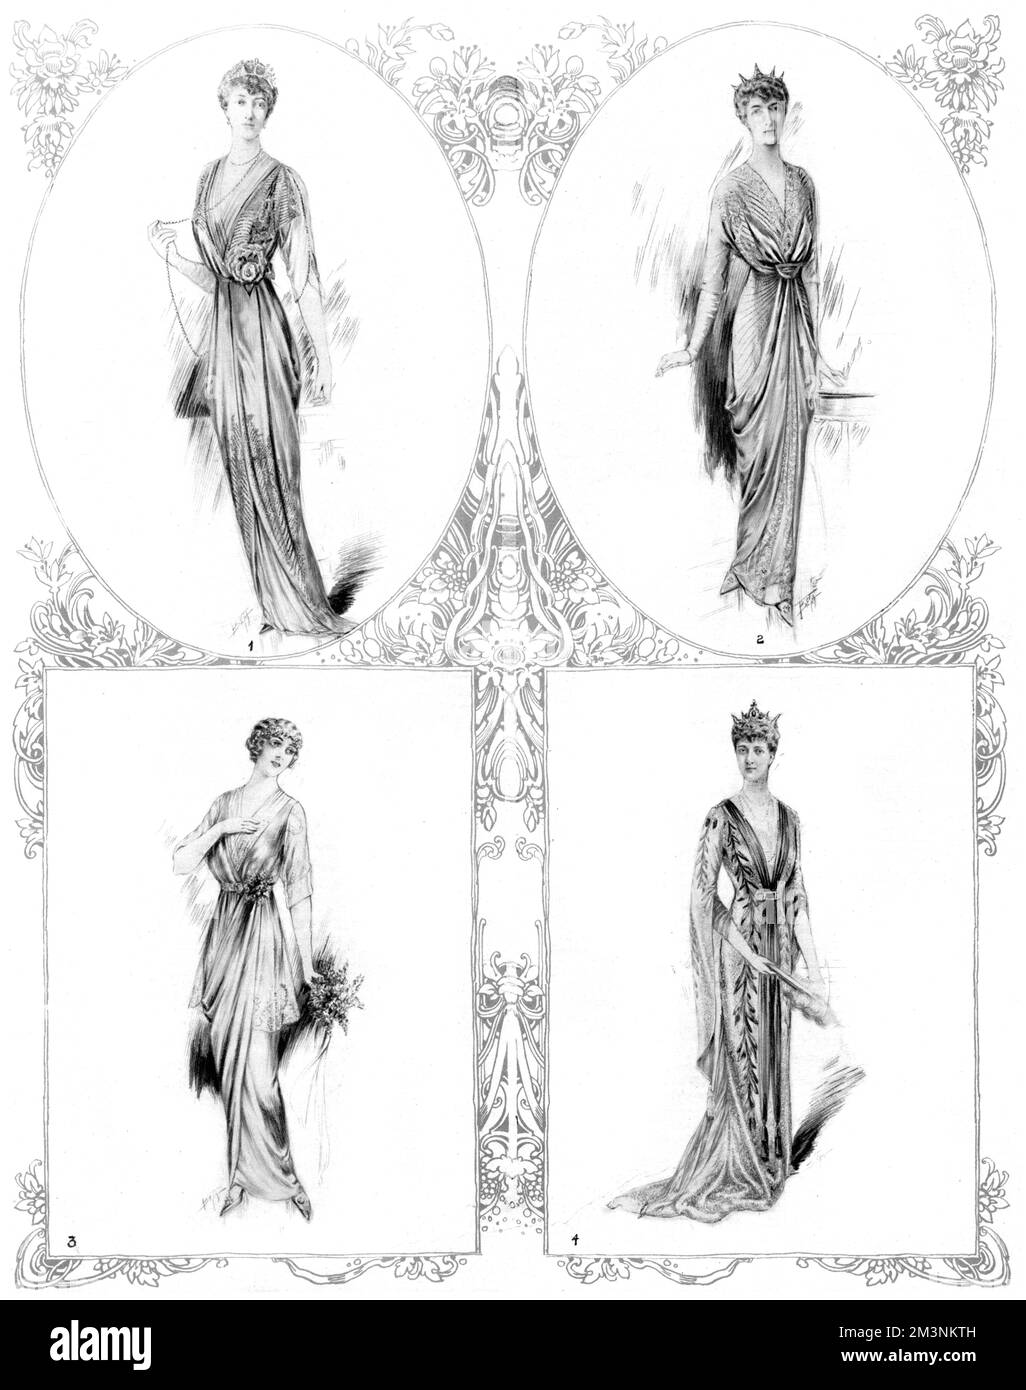 Cuatro de los vestidos diseñados para la boda de Arturo, Príncipe de Connaught y Alexandra, duquesa de Fife, que tuvo lugar en la Capilla Real, Palacio de San James, Londres, el 15 de octubre de 1913. Los vestidos eran para la Princesa Real, Madre de la Novia (arriba a la izquierda), la Princesa Victoria (arriba a la derecha), la Princesa Maud, Hermana de la Novia, una dama de honor (abajo a la izquierda), y la Reina Alexandra (abajo a la derecha). Los vestidos fueron hechos por Felix Barolet de Knightsbridge. Fecha: 1913 de octubre Foto de stock